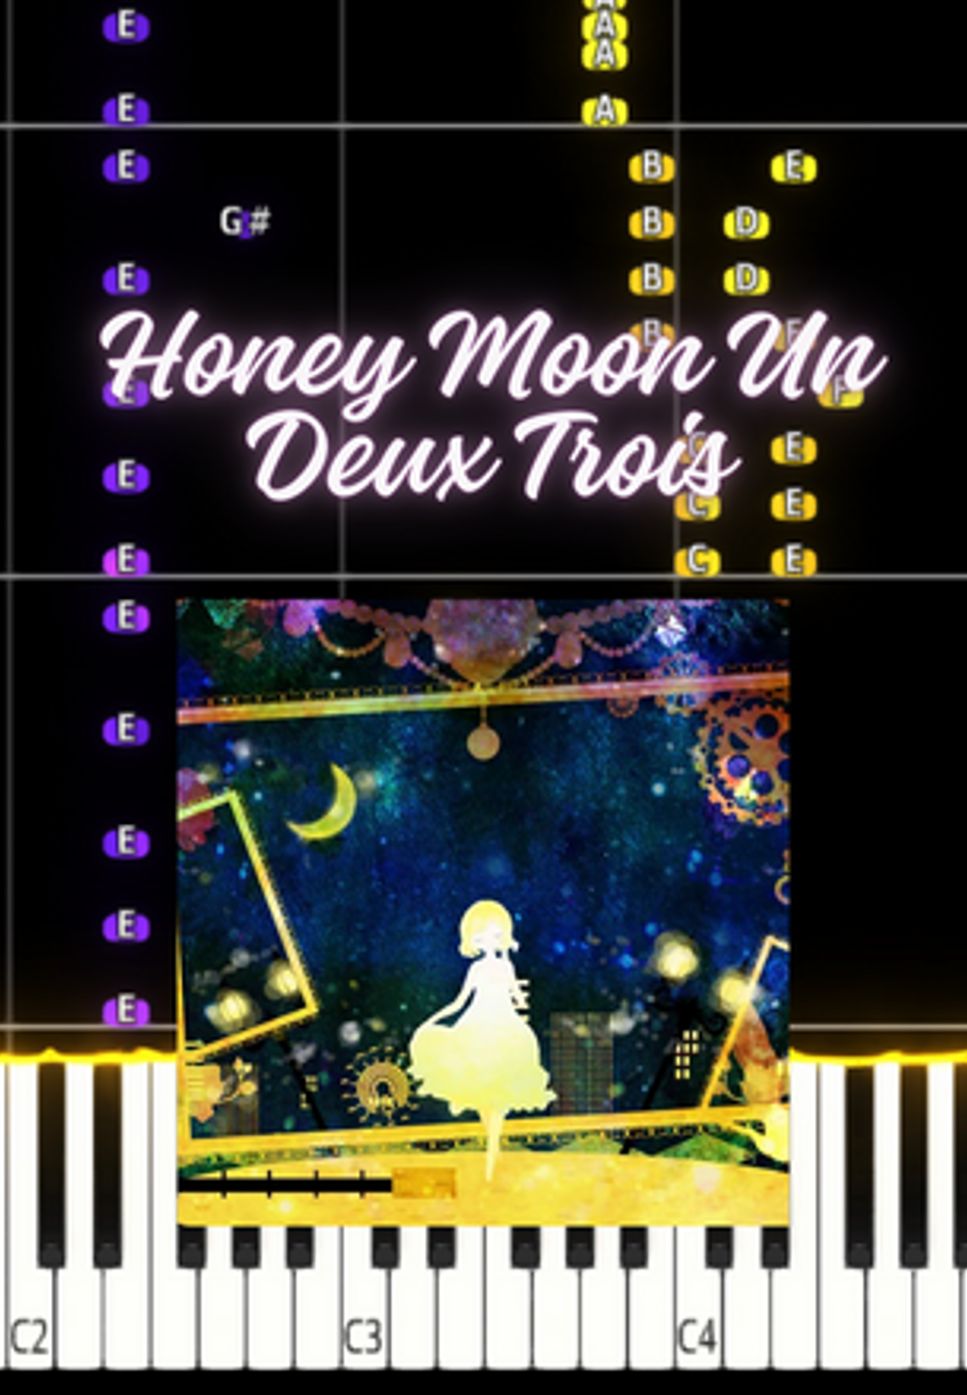 Dateken - Honey Moon Un Deux Trois by Marco D.